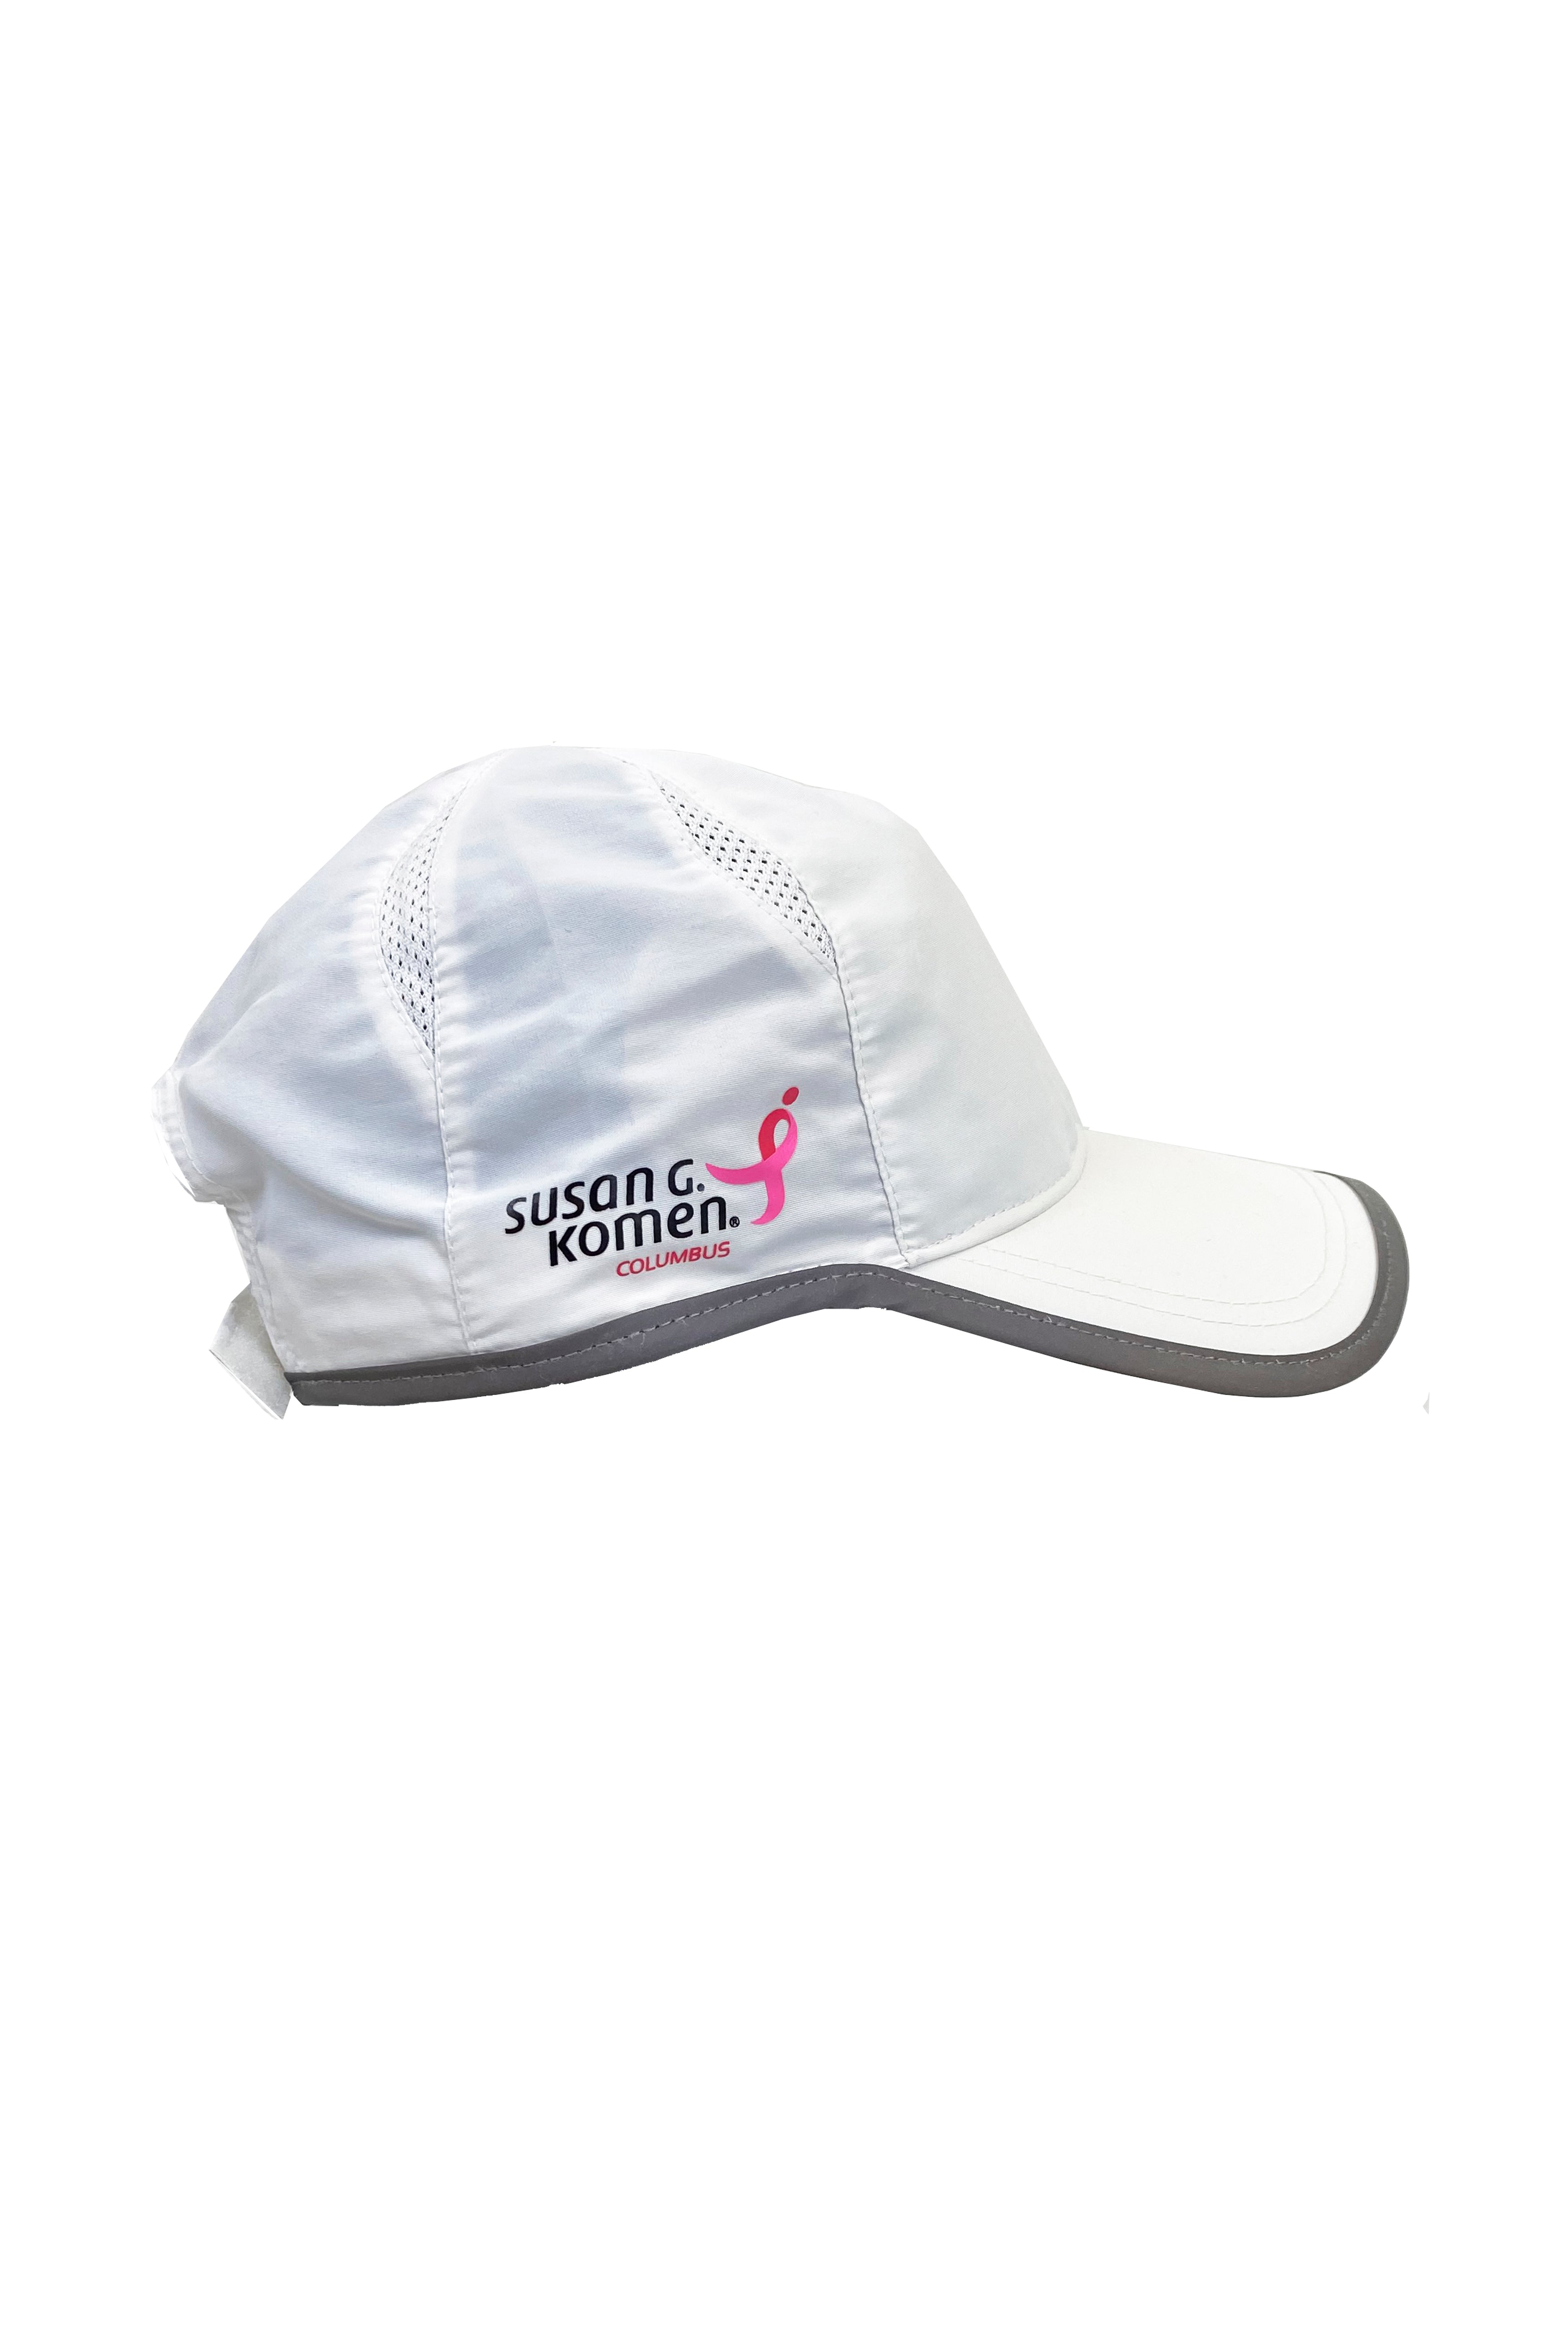 7406 - Komen Columbus Pink Ribbon Running Hat/White